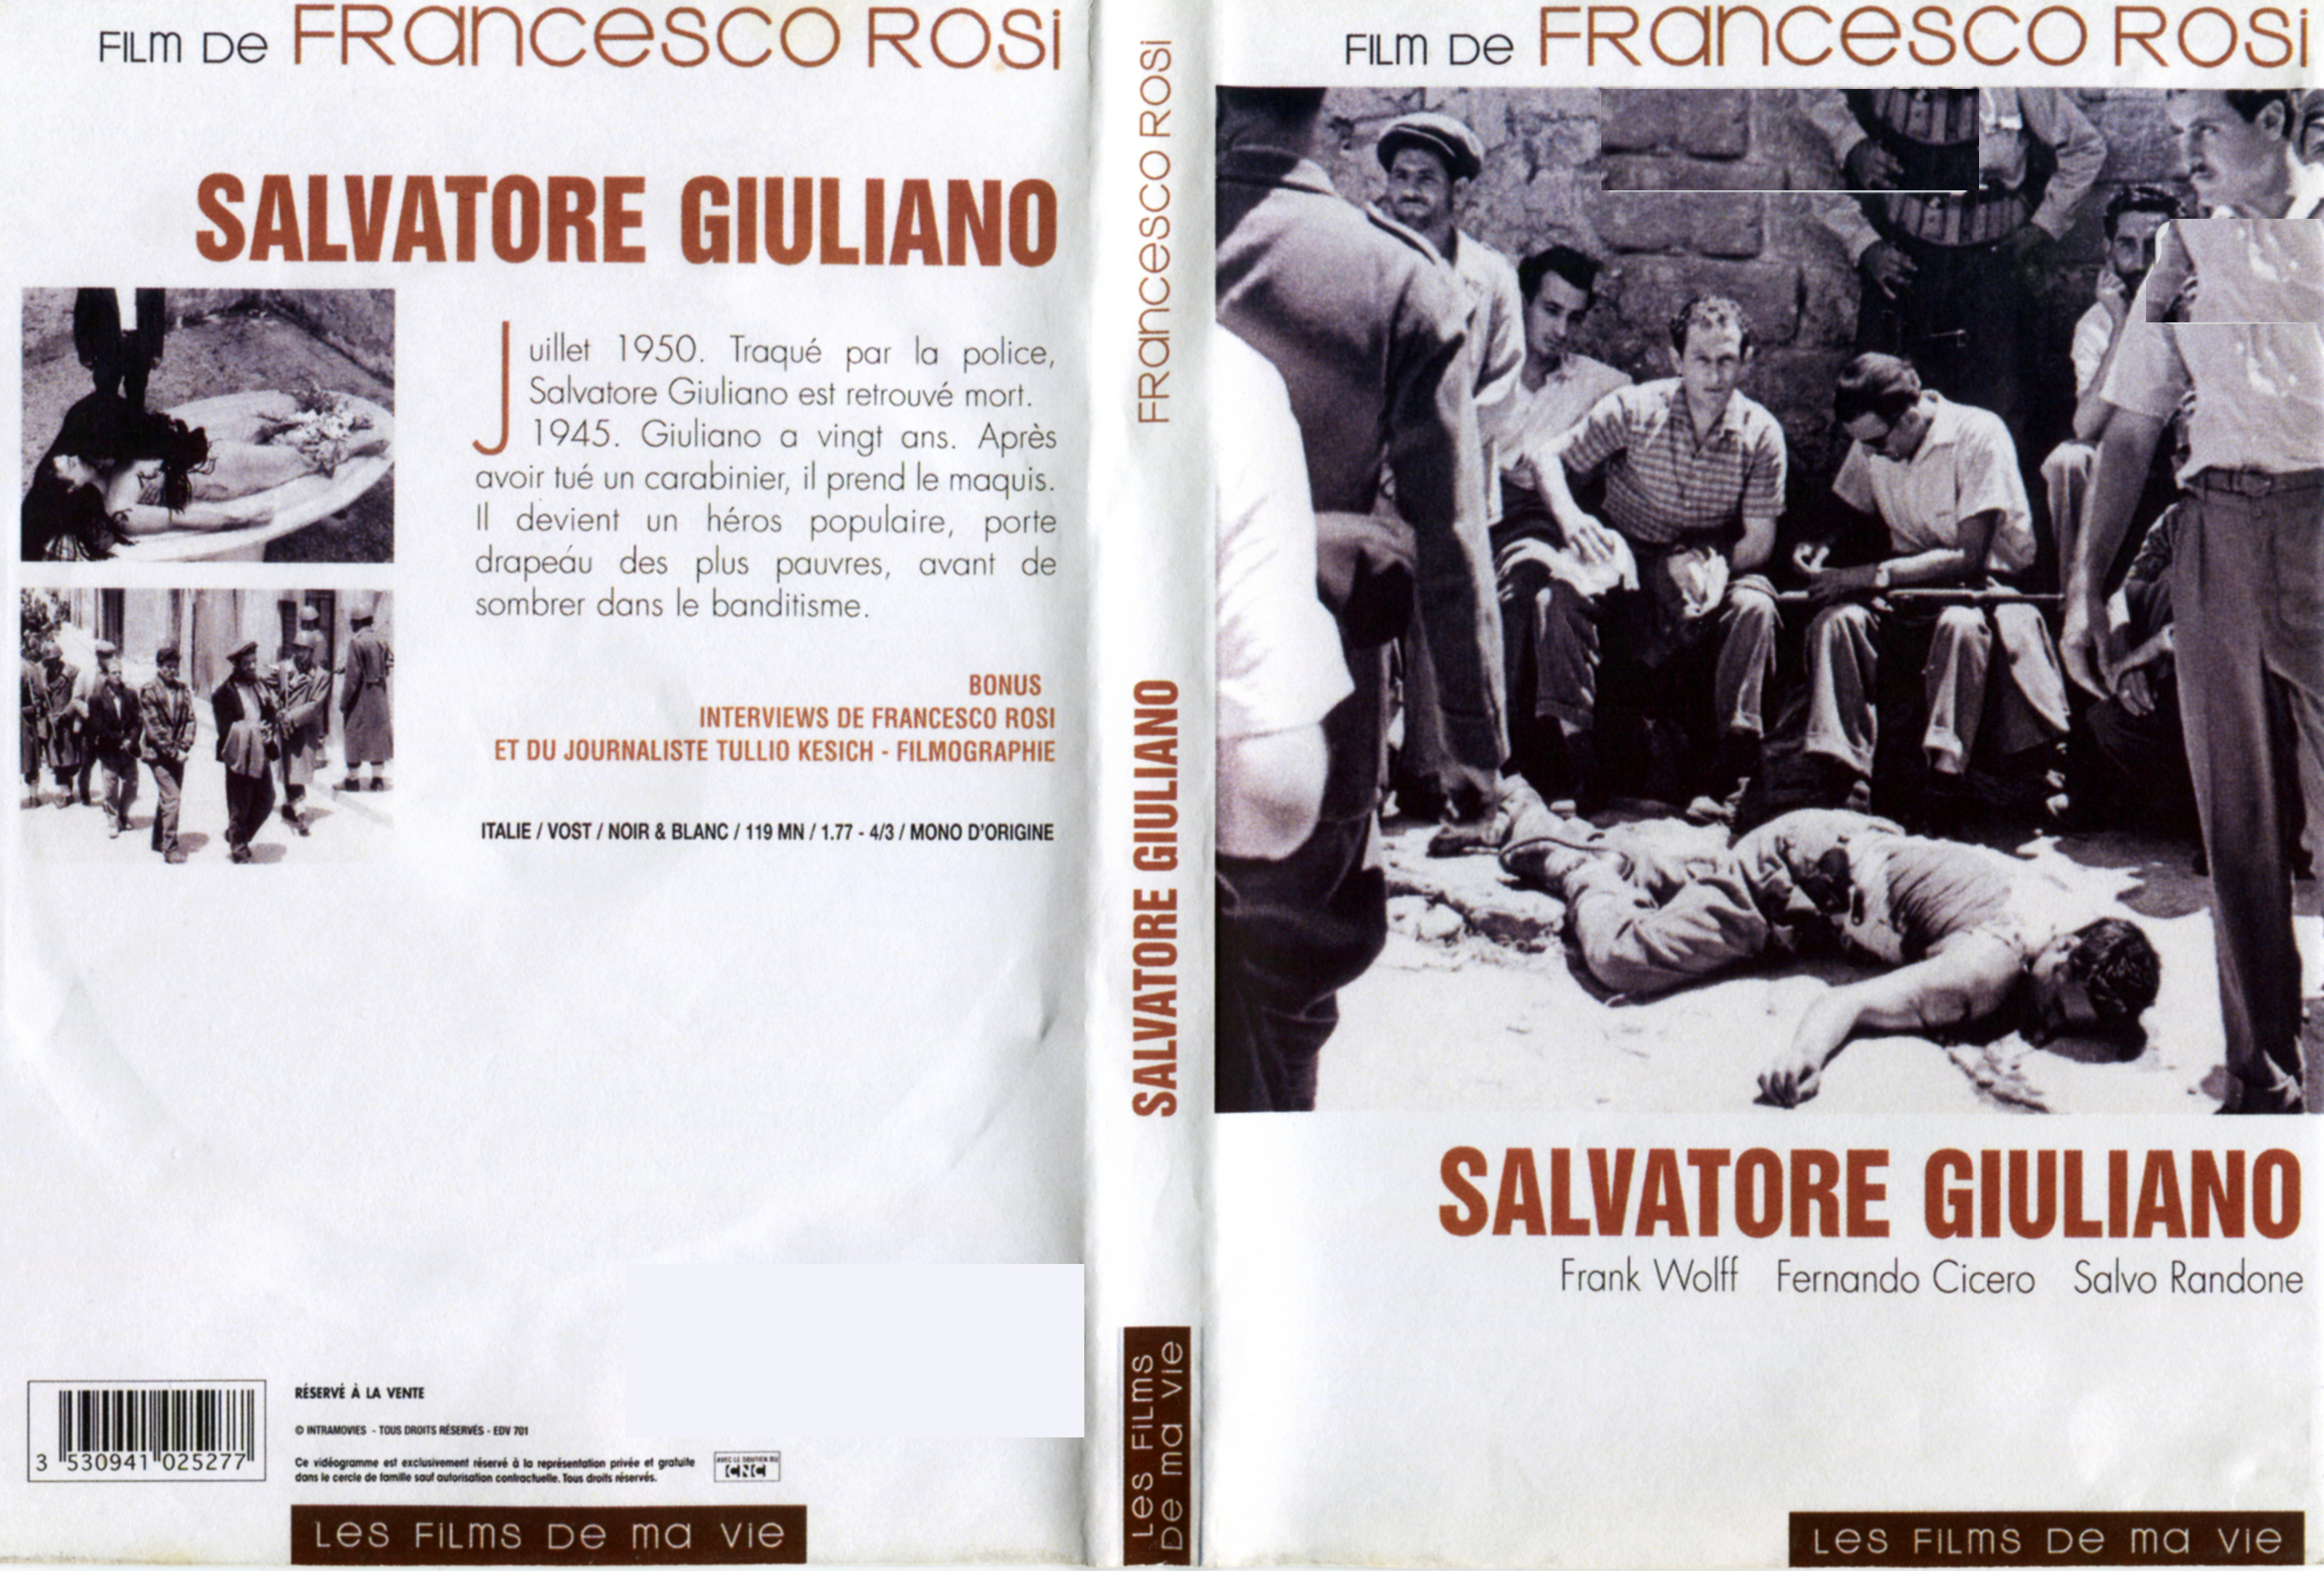 Jaquette DVD Salvatore Giuliano